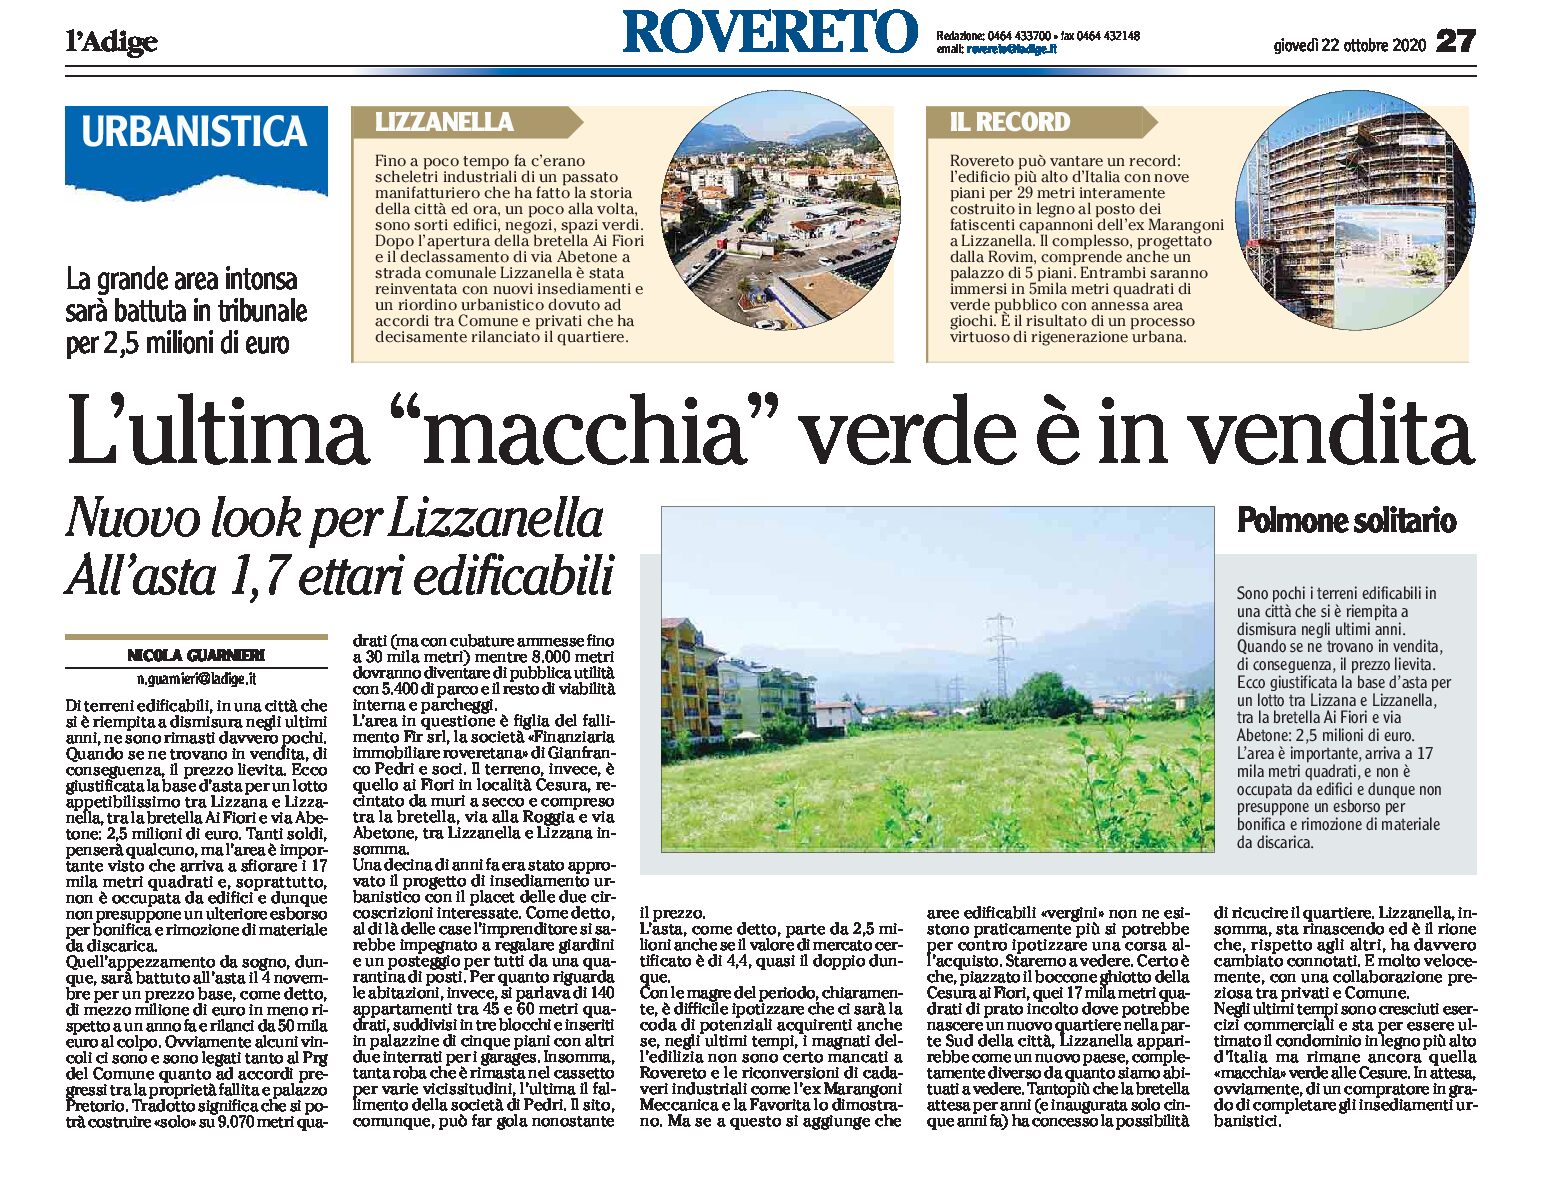 Rovereto, Lizzanella: l’ultima “macchia” verde è in vendita